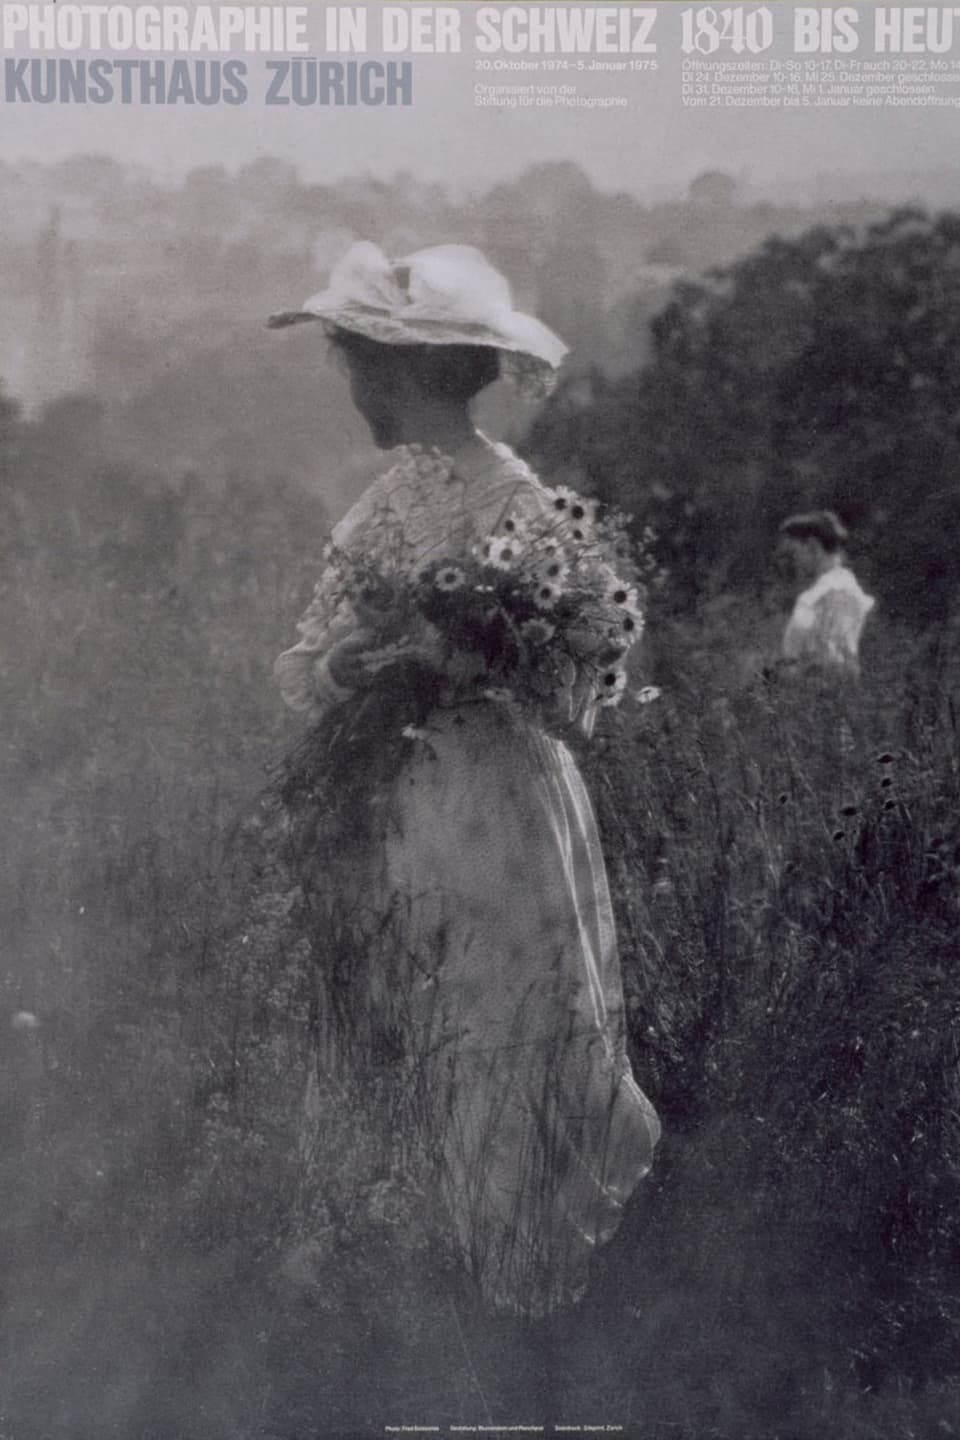 Schwarz-Weiss Bild von zwei Frauen auf einer Blumenwiese